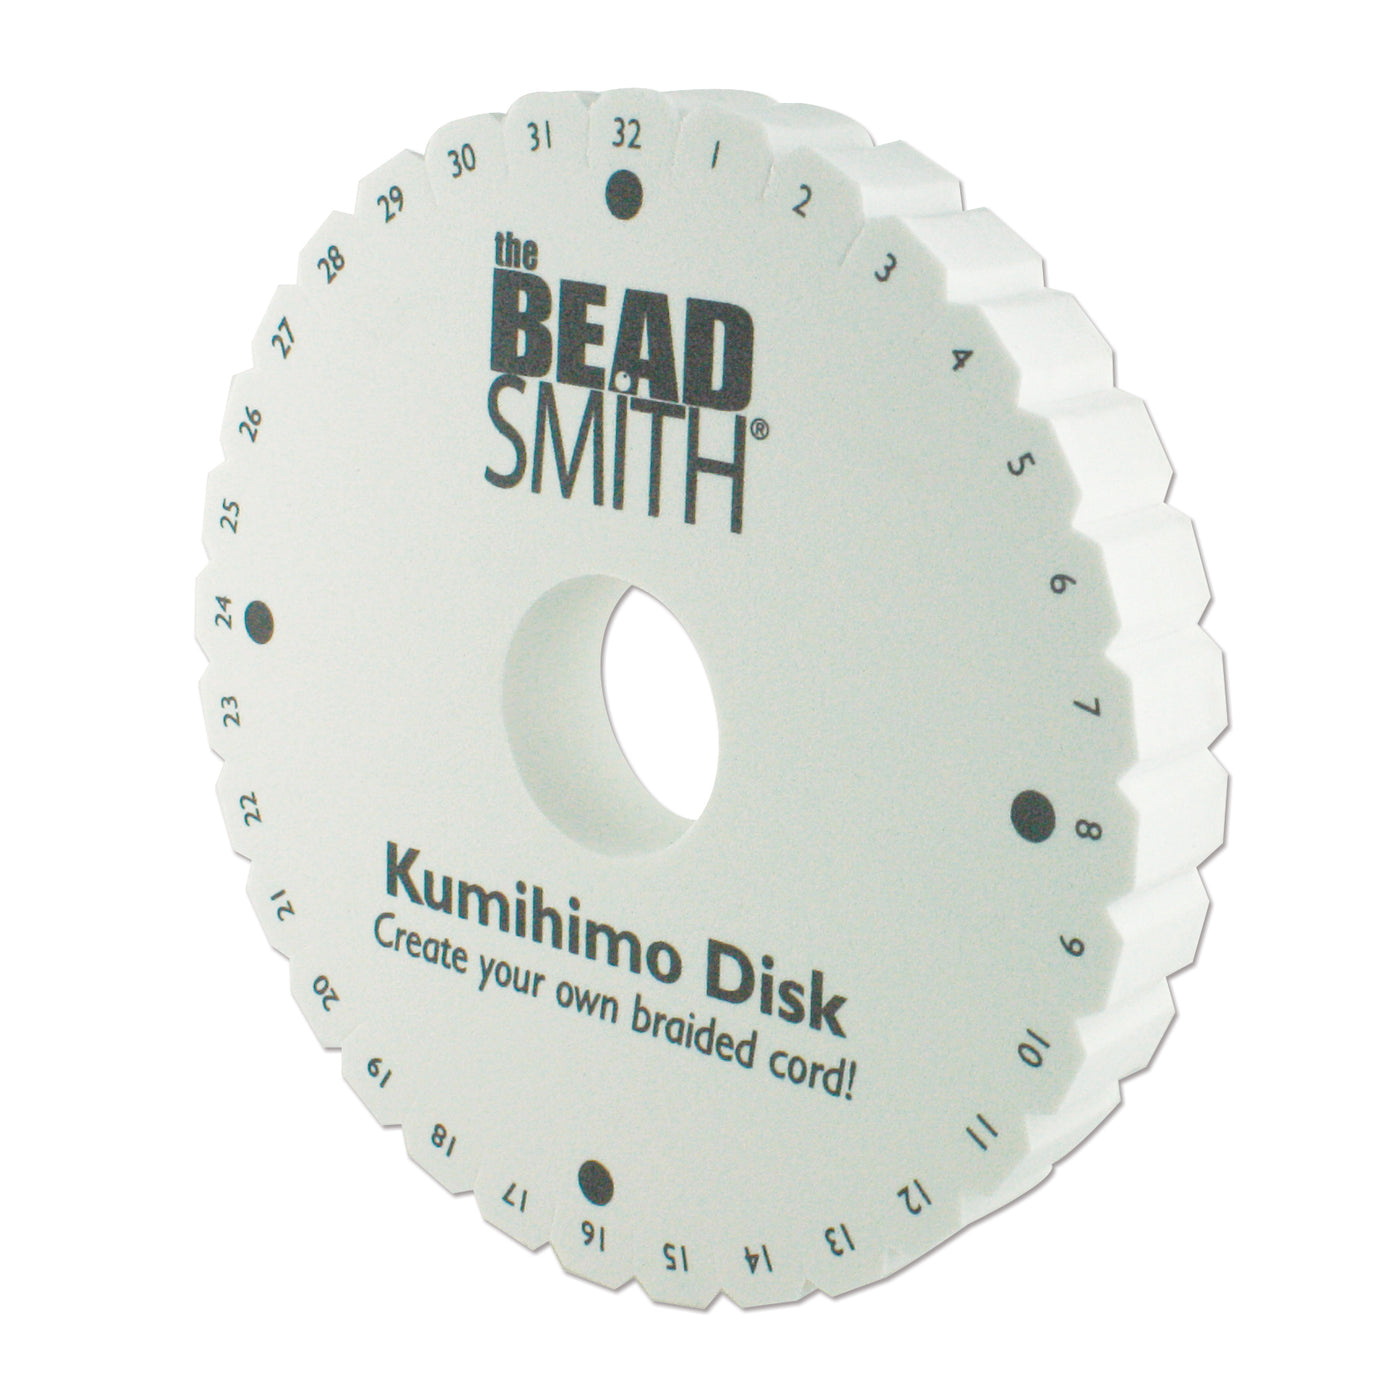 521-000: Hamanaka Kumihimo Disk (15cm x 1cm thick)